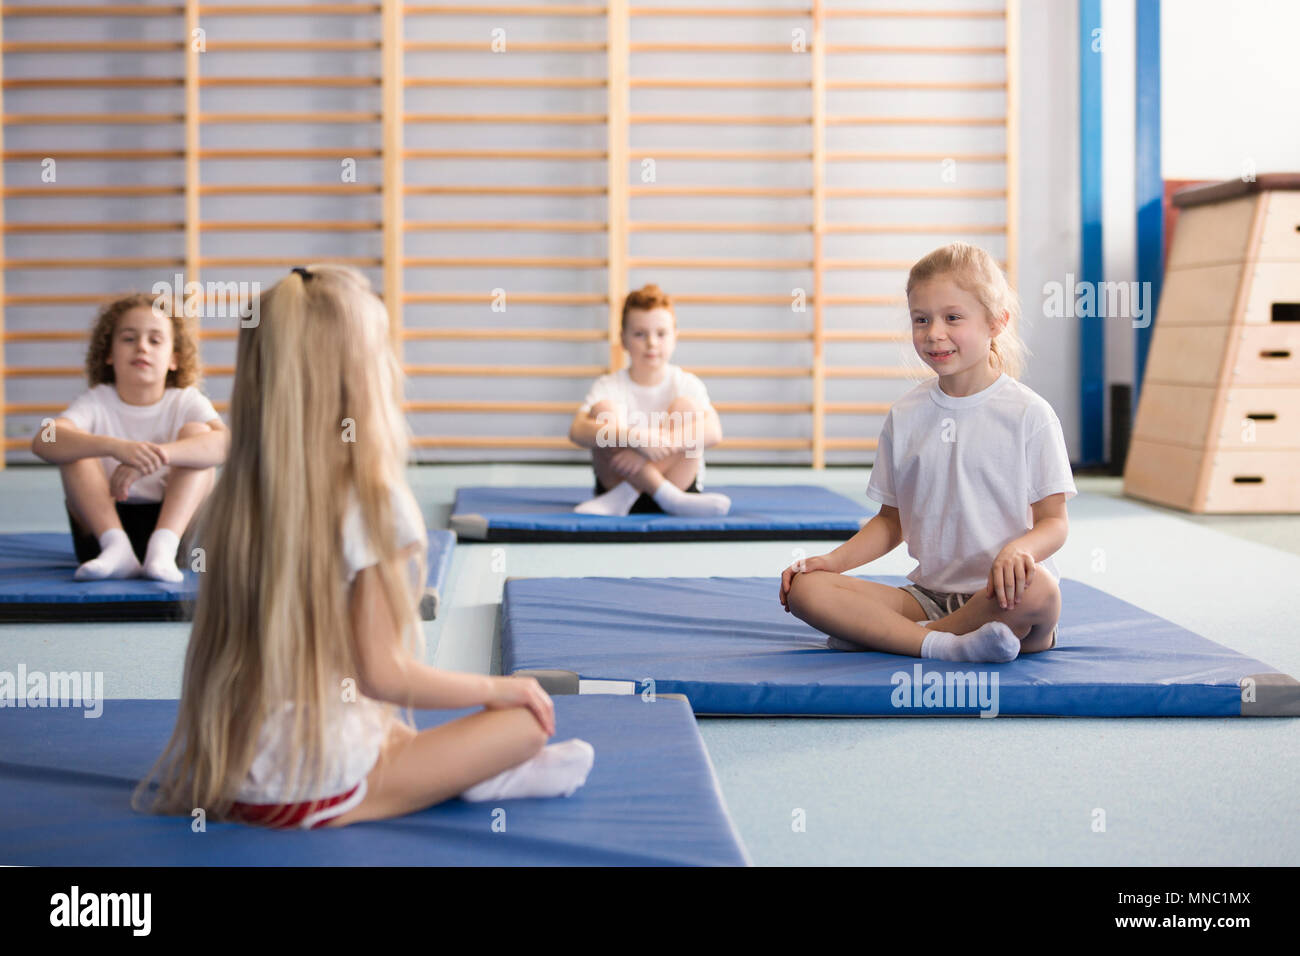 Glückliche junge Mädchen sitzen einander gegenüber auf blauen Matten Trainieren mit ihren Beinen während PE-Klassen in der Grundschule Turnhalle Innenraum gekreuzt Stockfoto